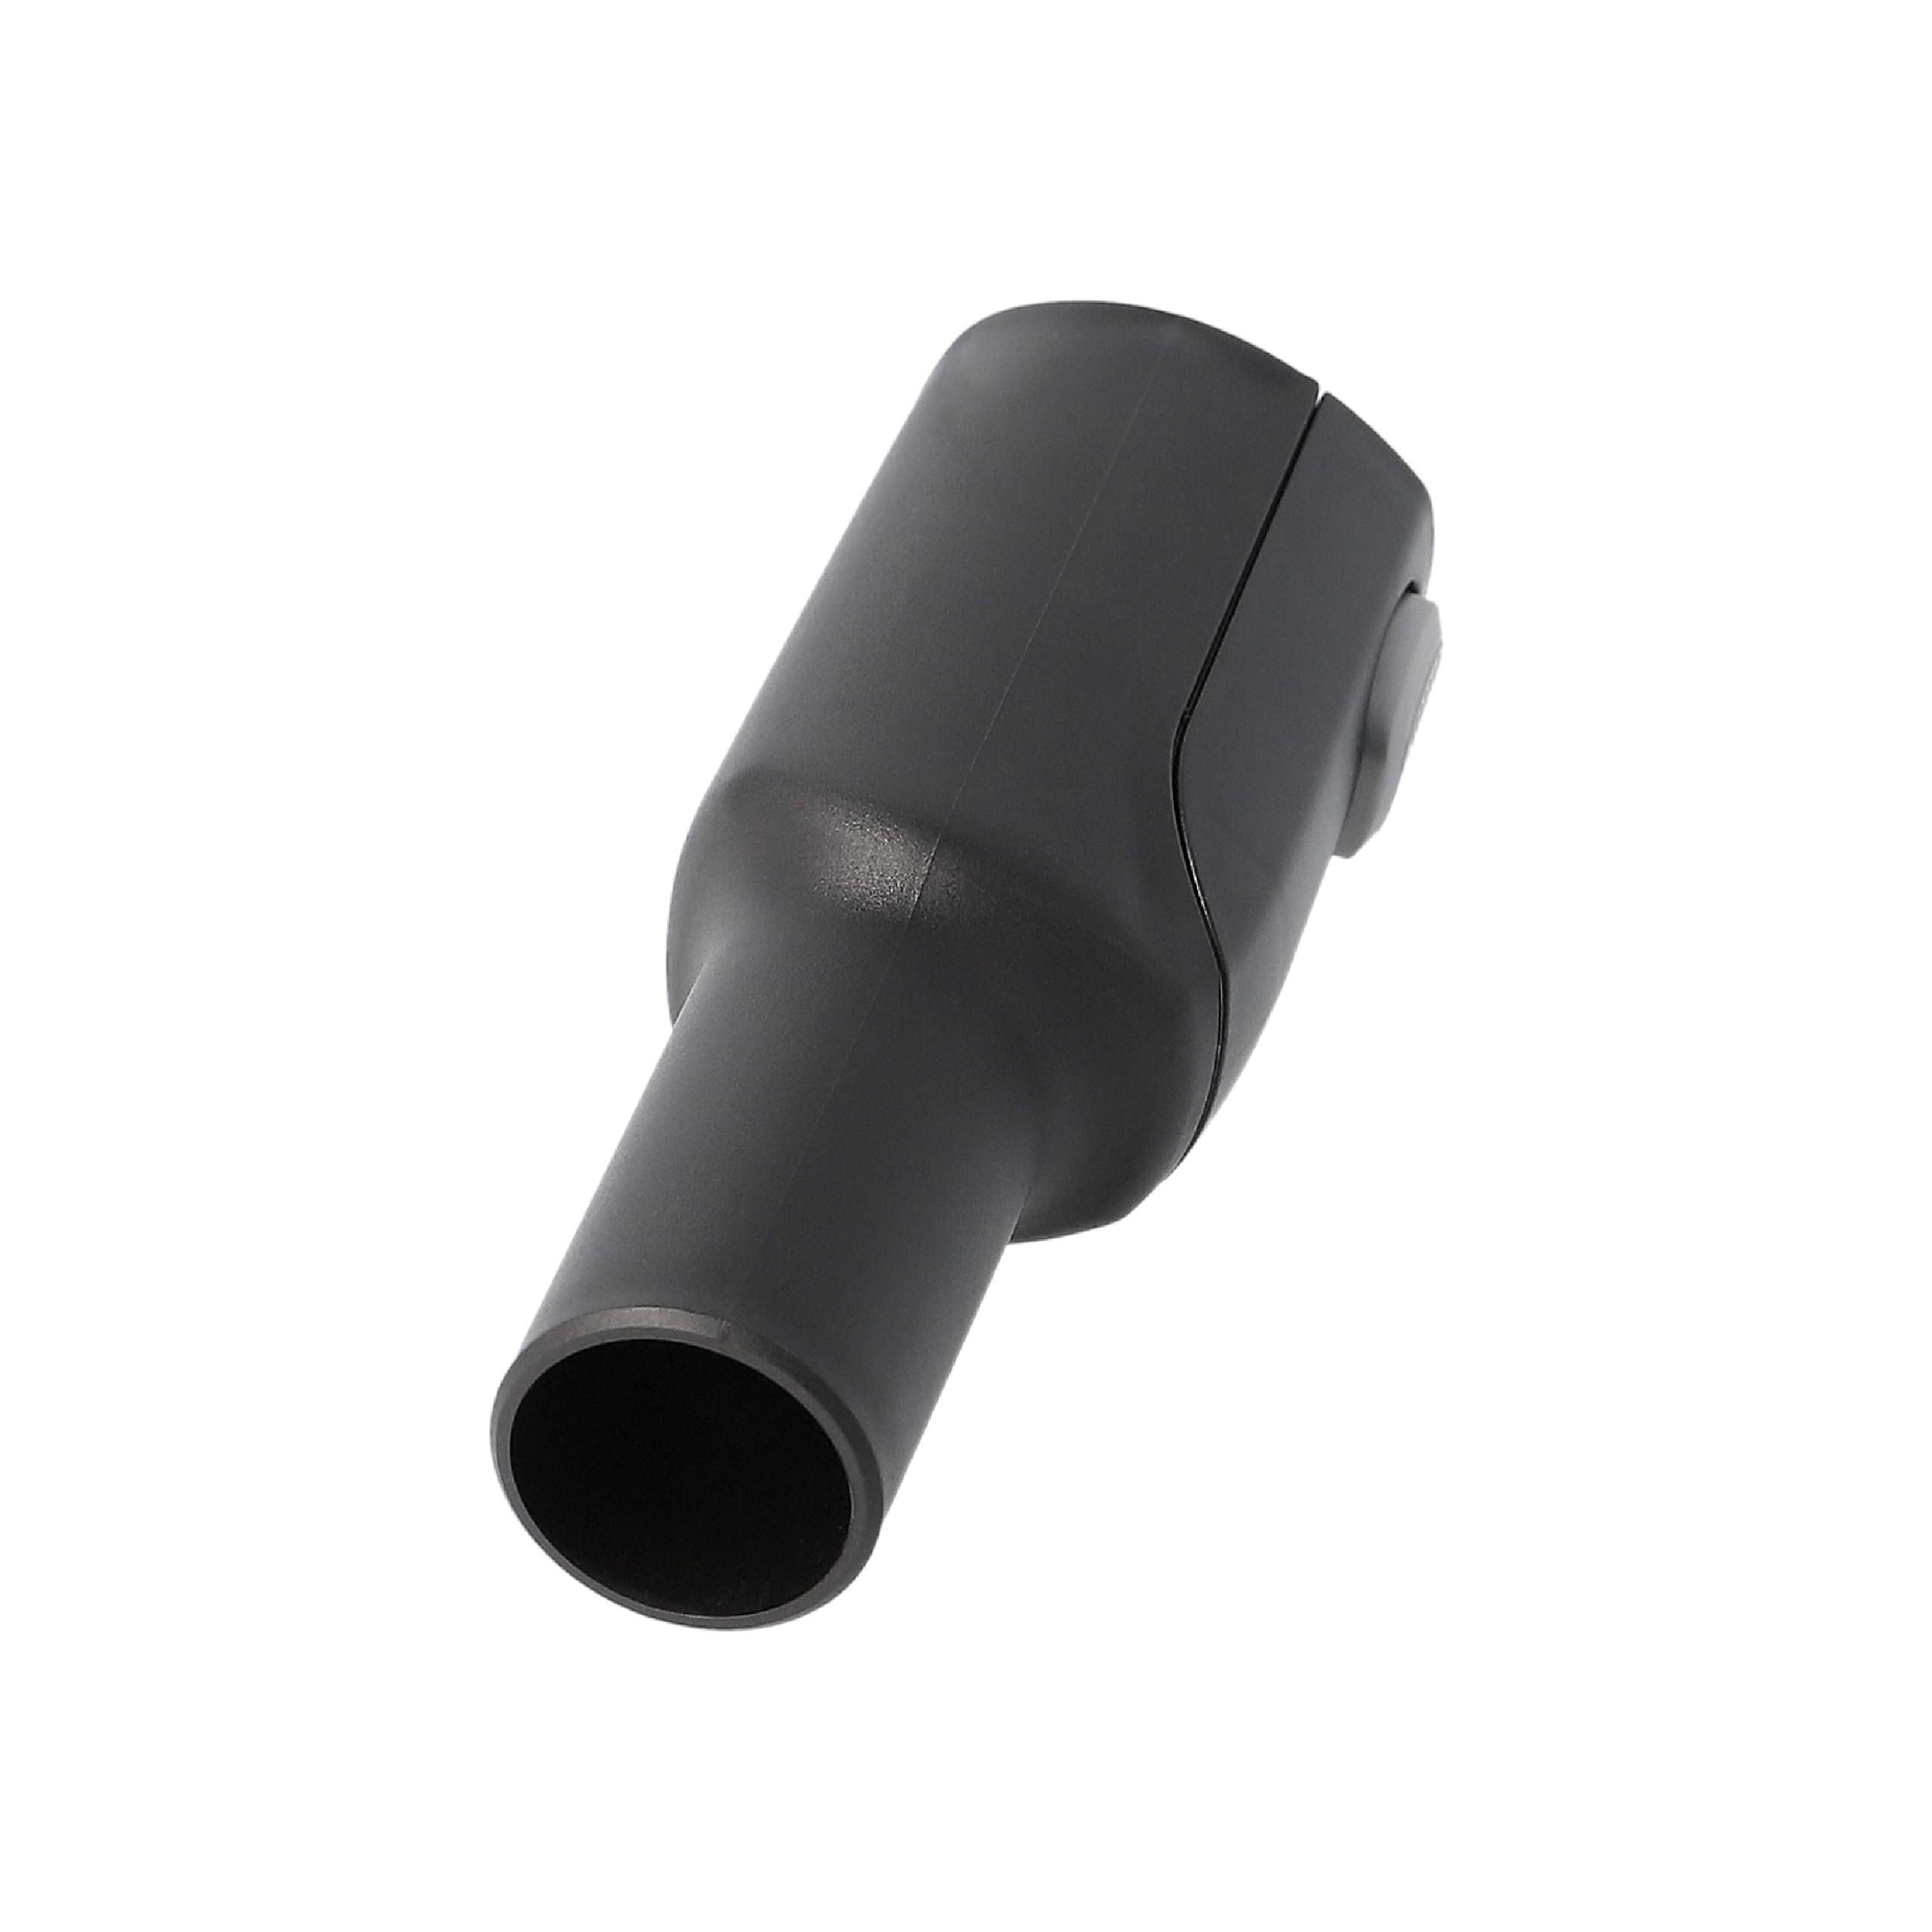 Raccordo Max-In 36mm con attacco accessori 32mm sostituisce AEG/Electrolux 9001967166 per aspiratore - nero